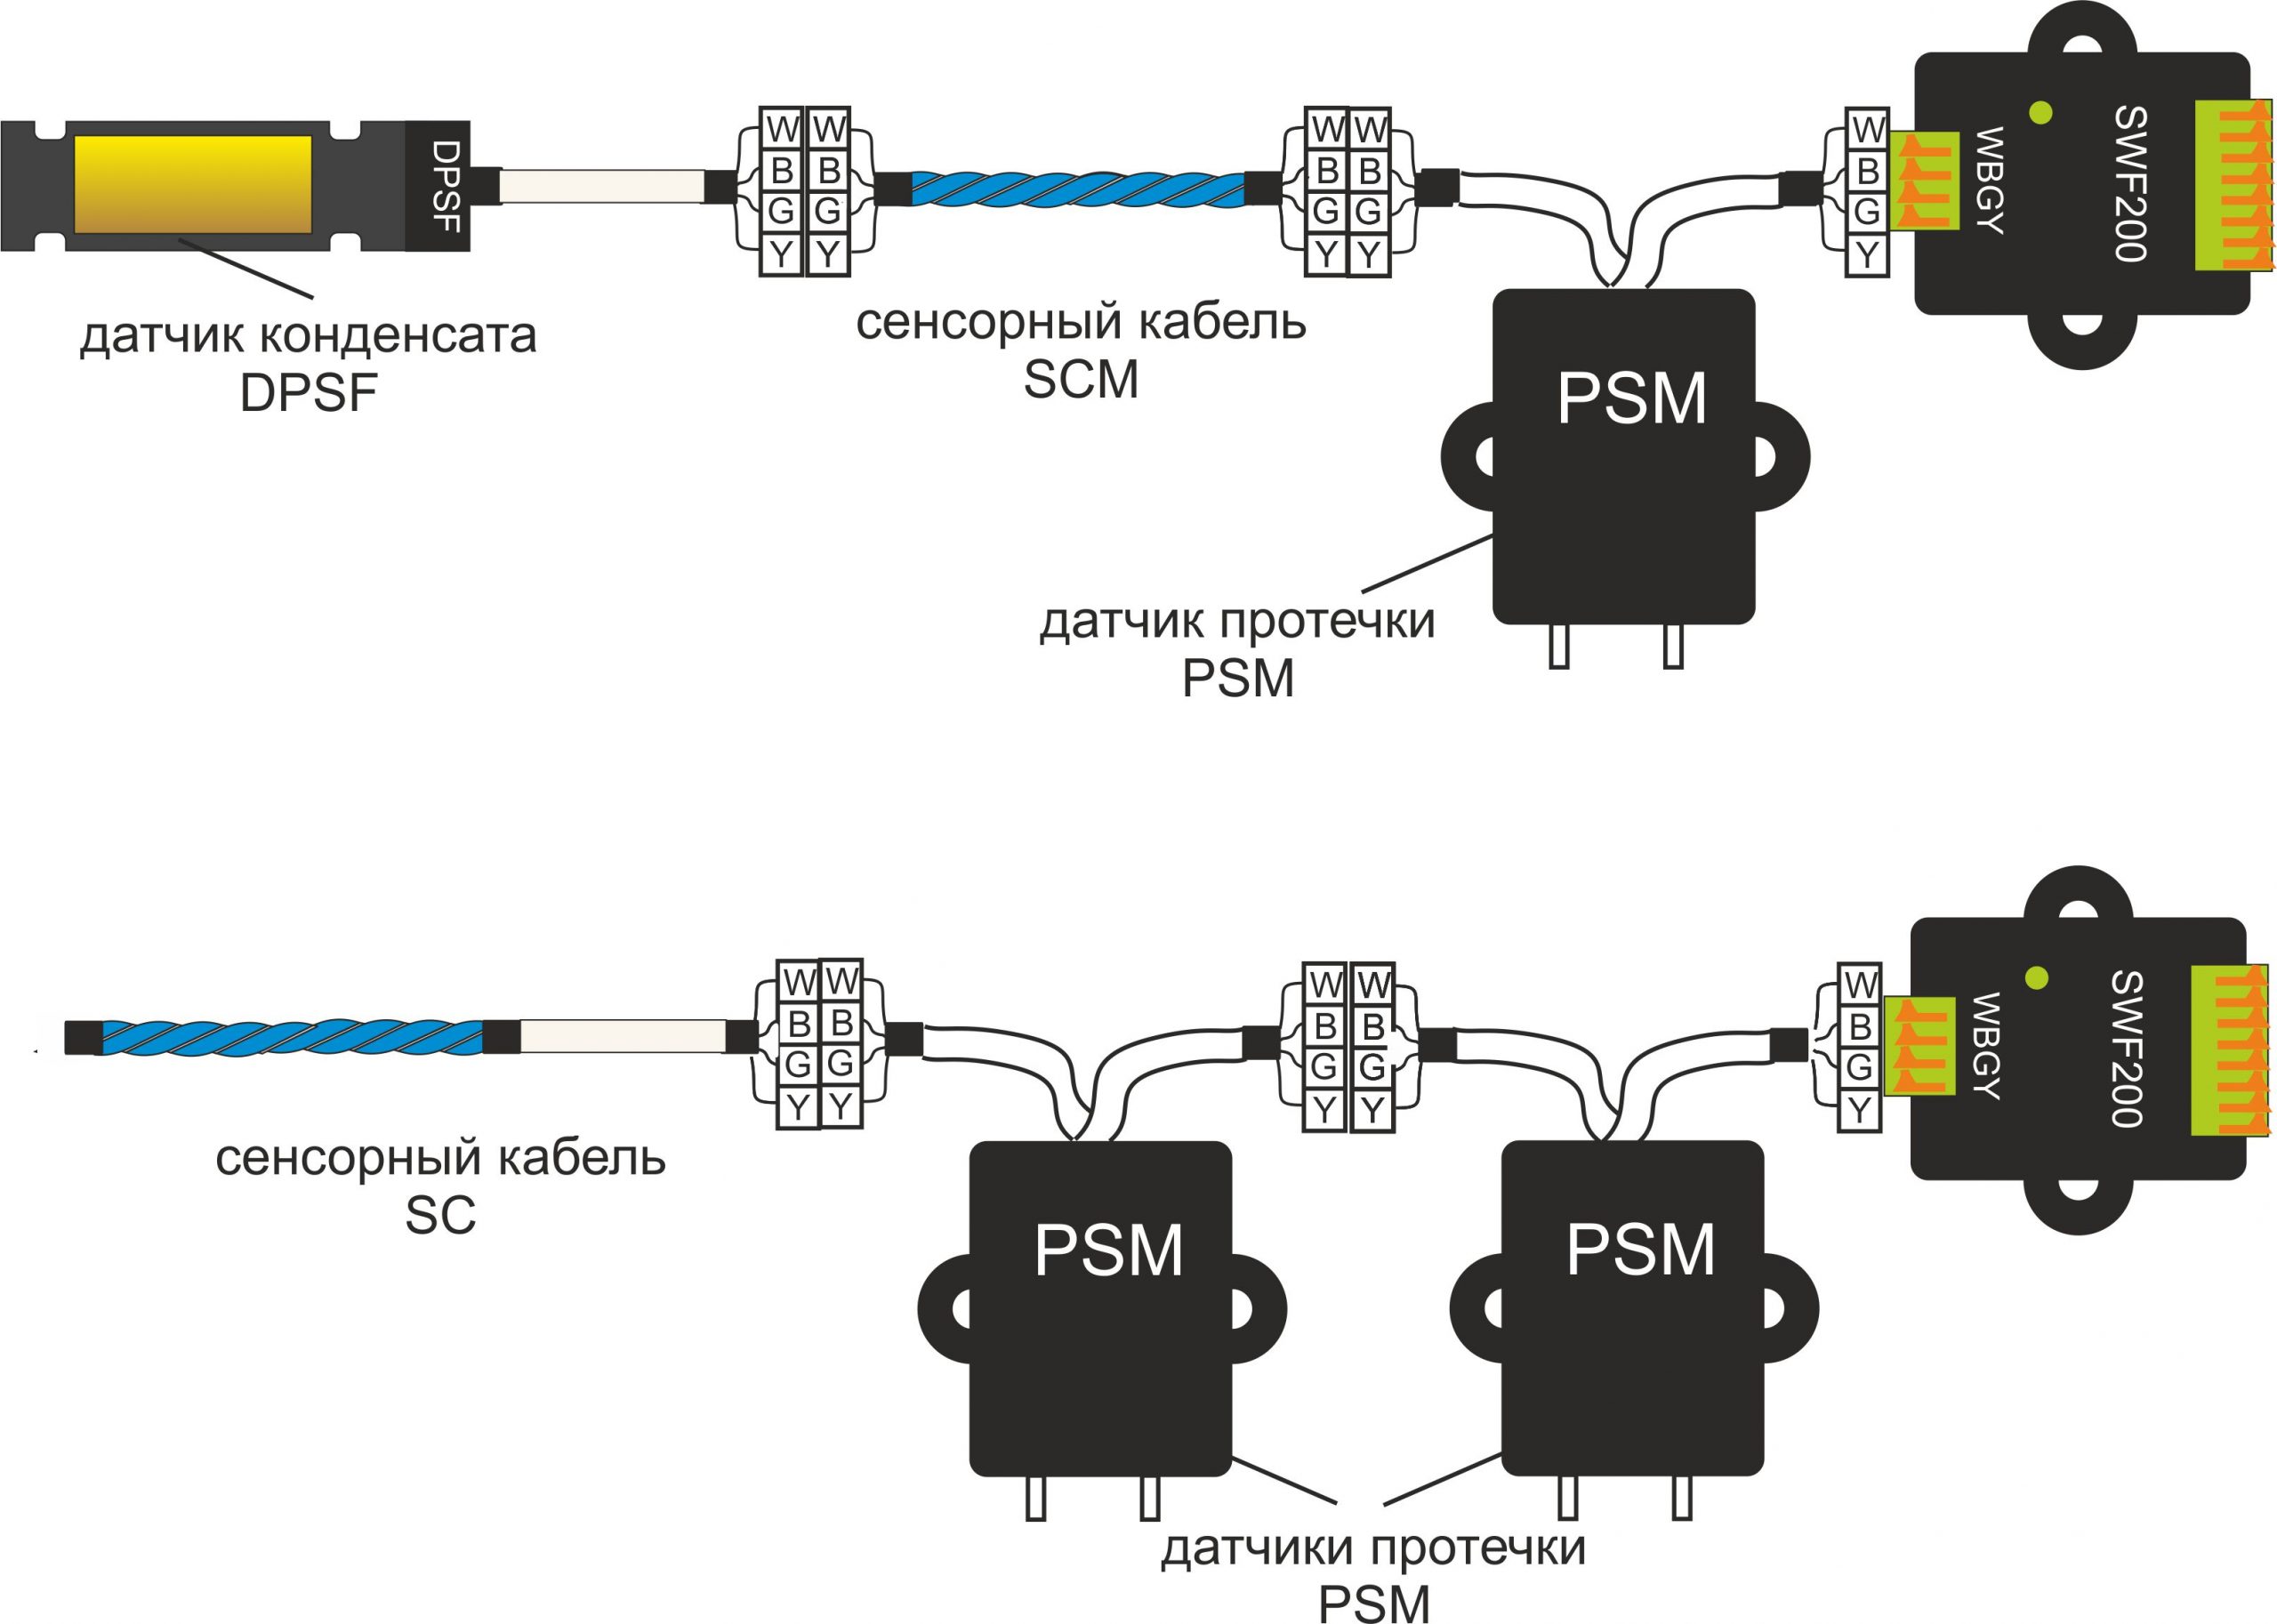 подключение датчиков конденсата к миниатюрному контроллеру защиты от протечки